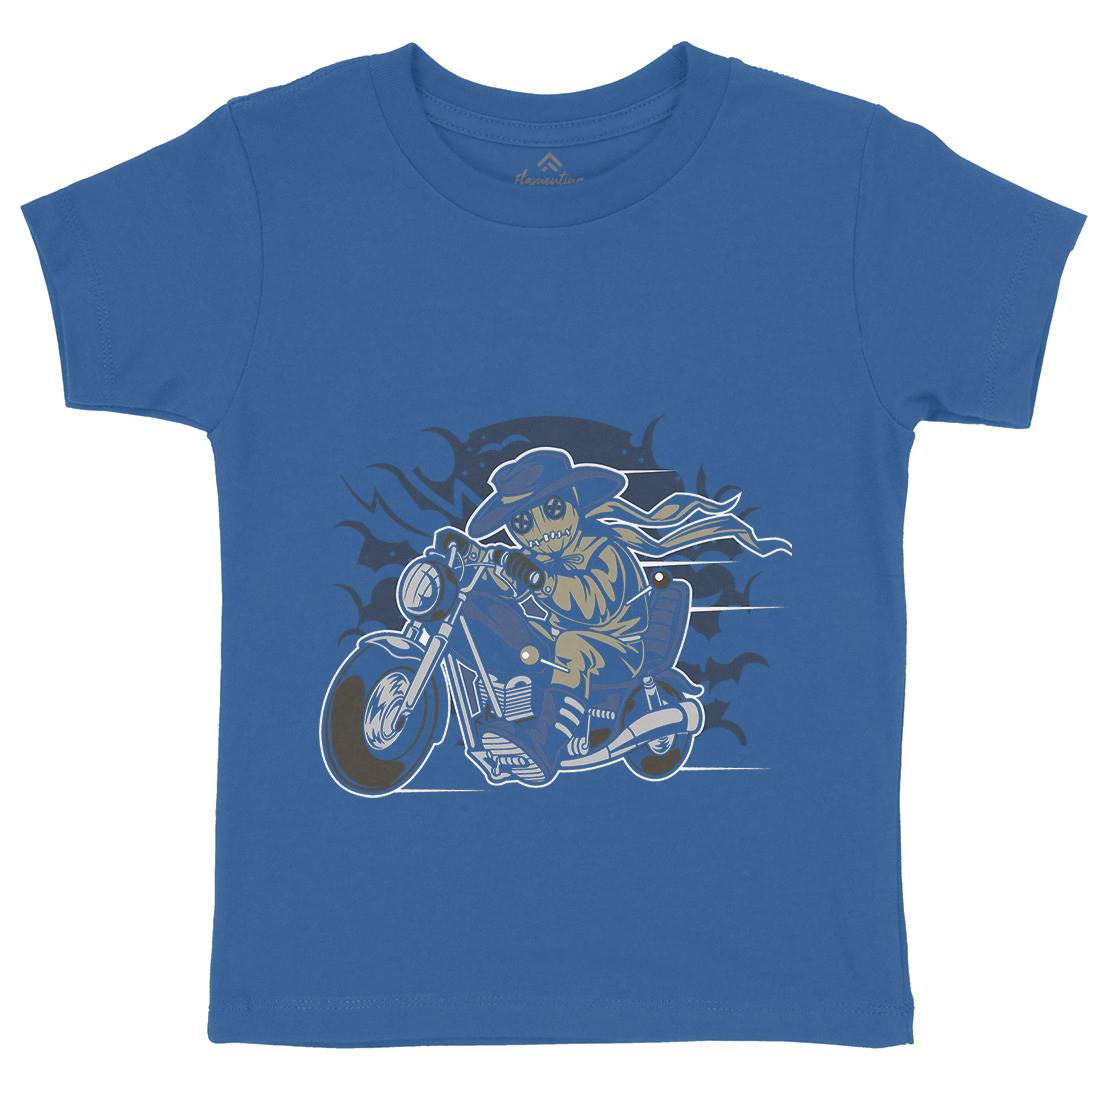 Voodoo Doll Biker Kids Organic Crew Neck T-Shirt Motorcycles C469